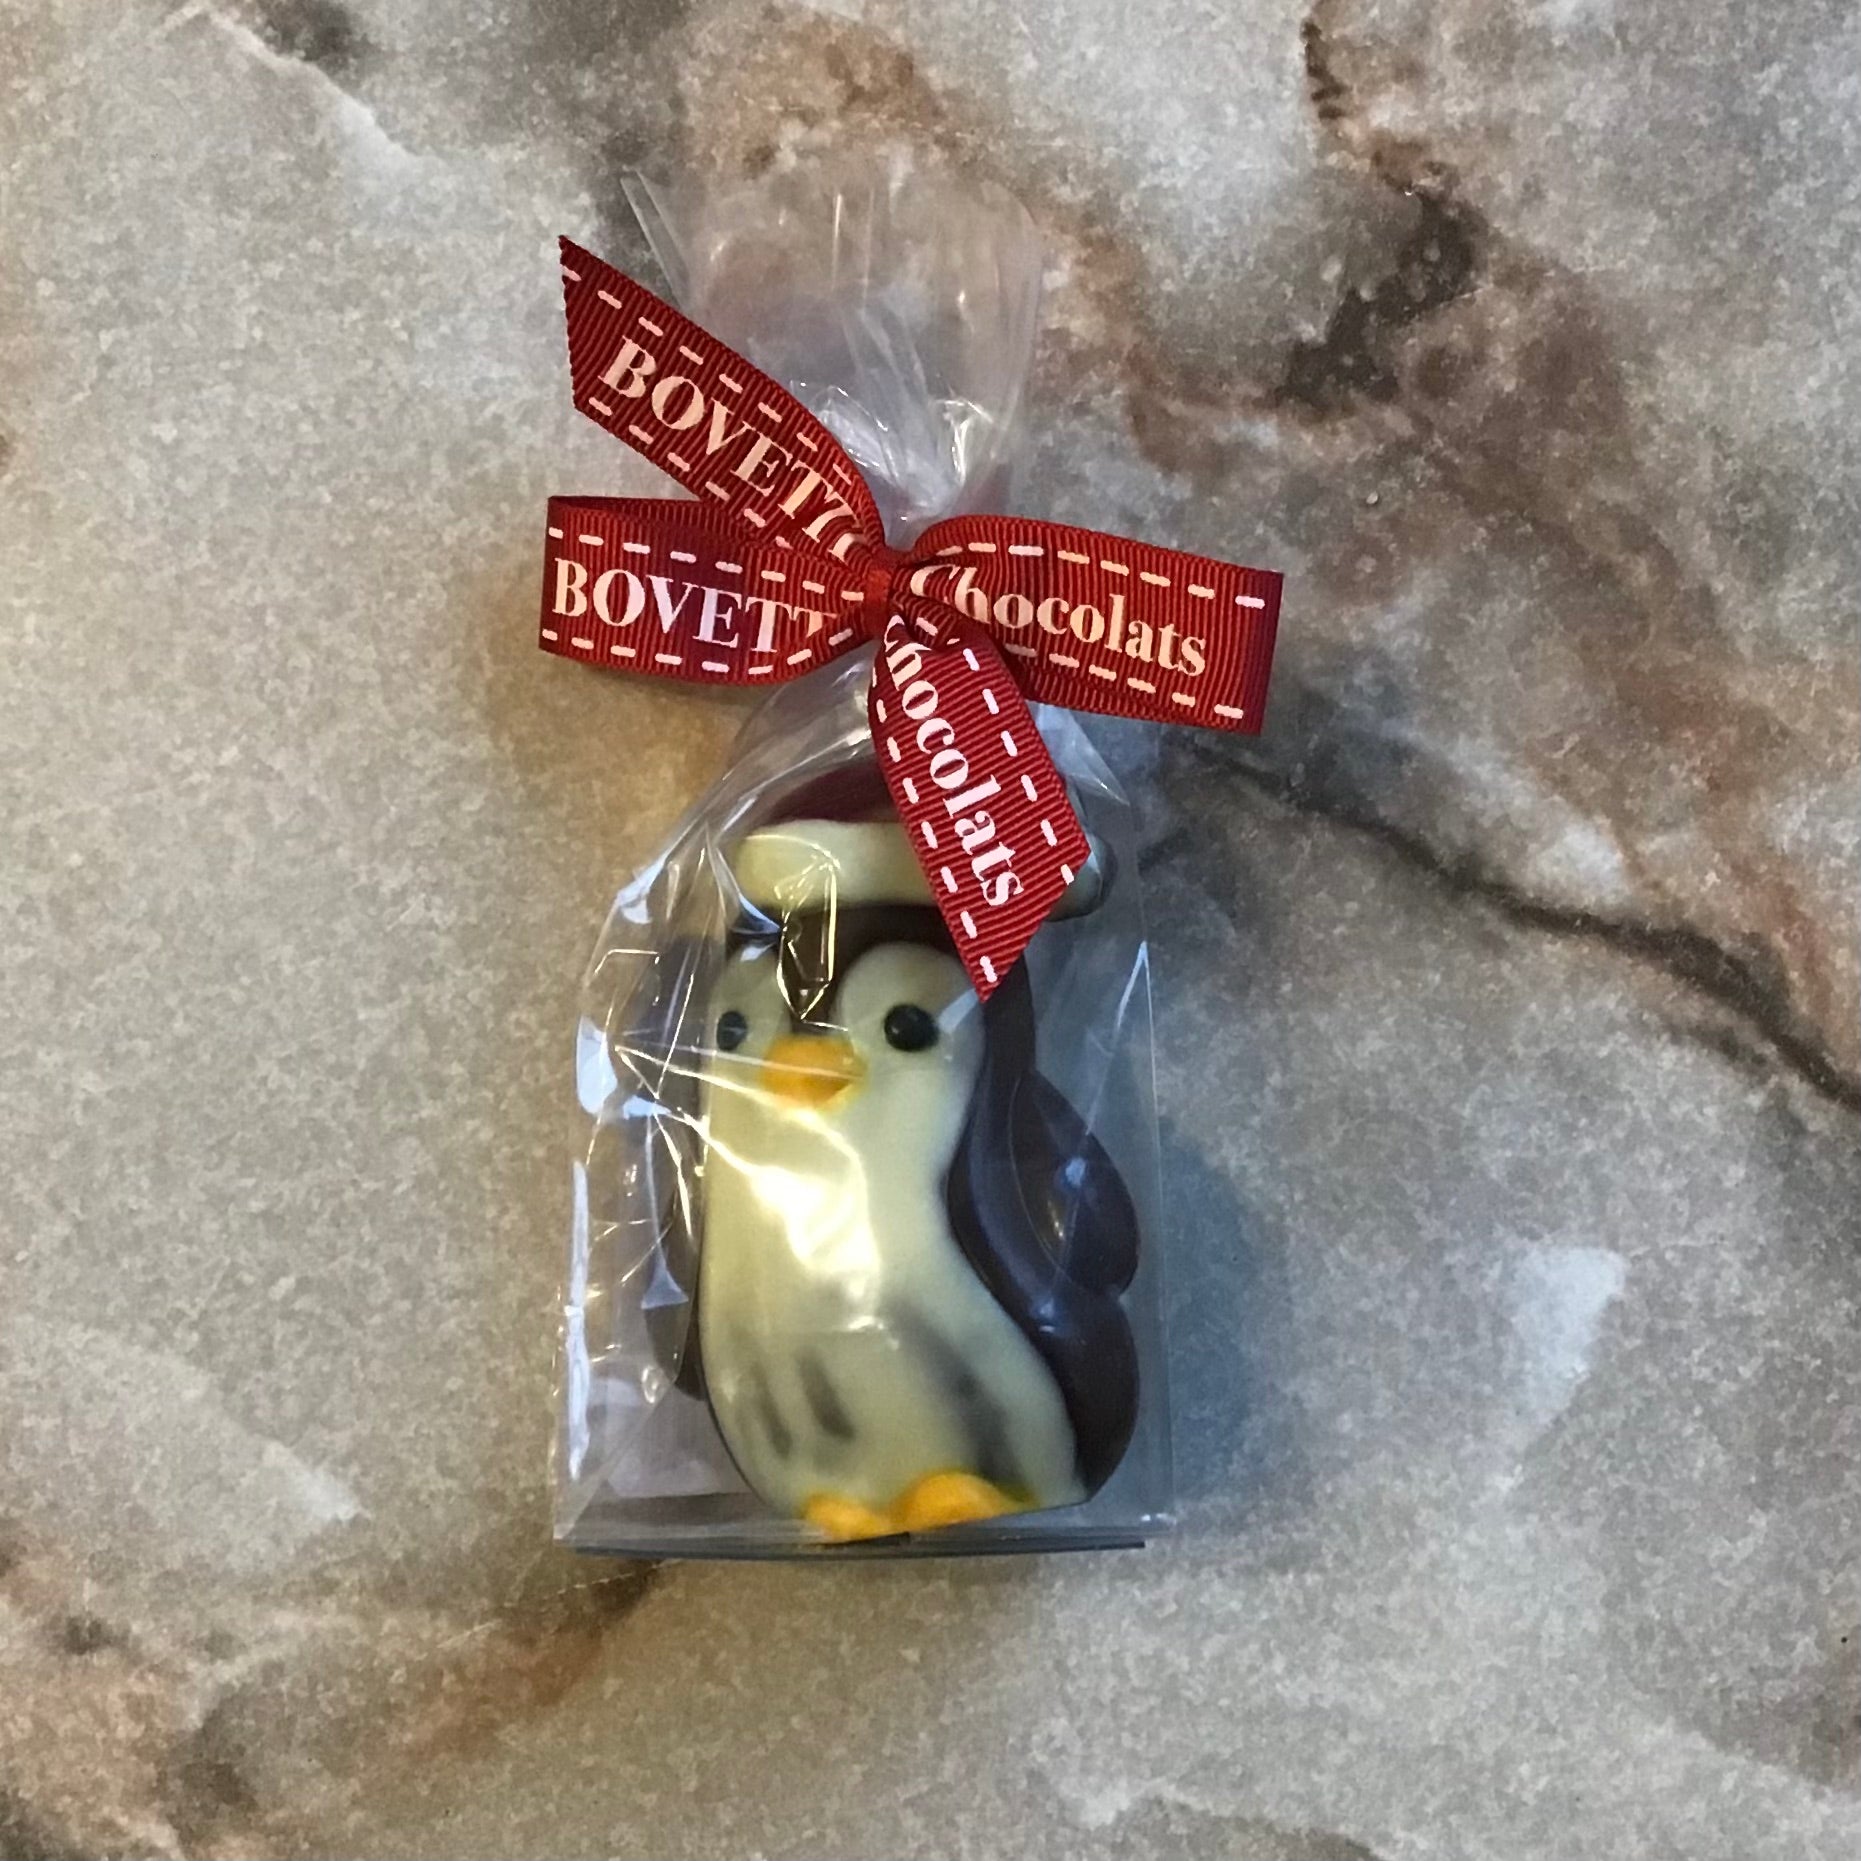 Bovetti Dark Chocolate Penguin 1.4 oz